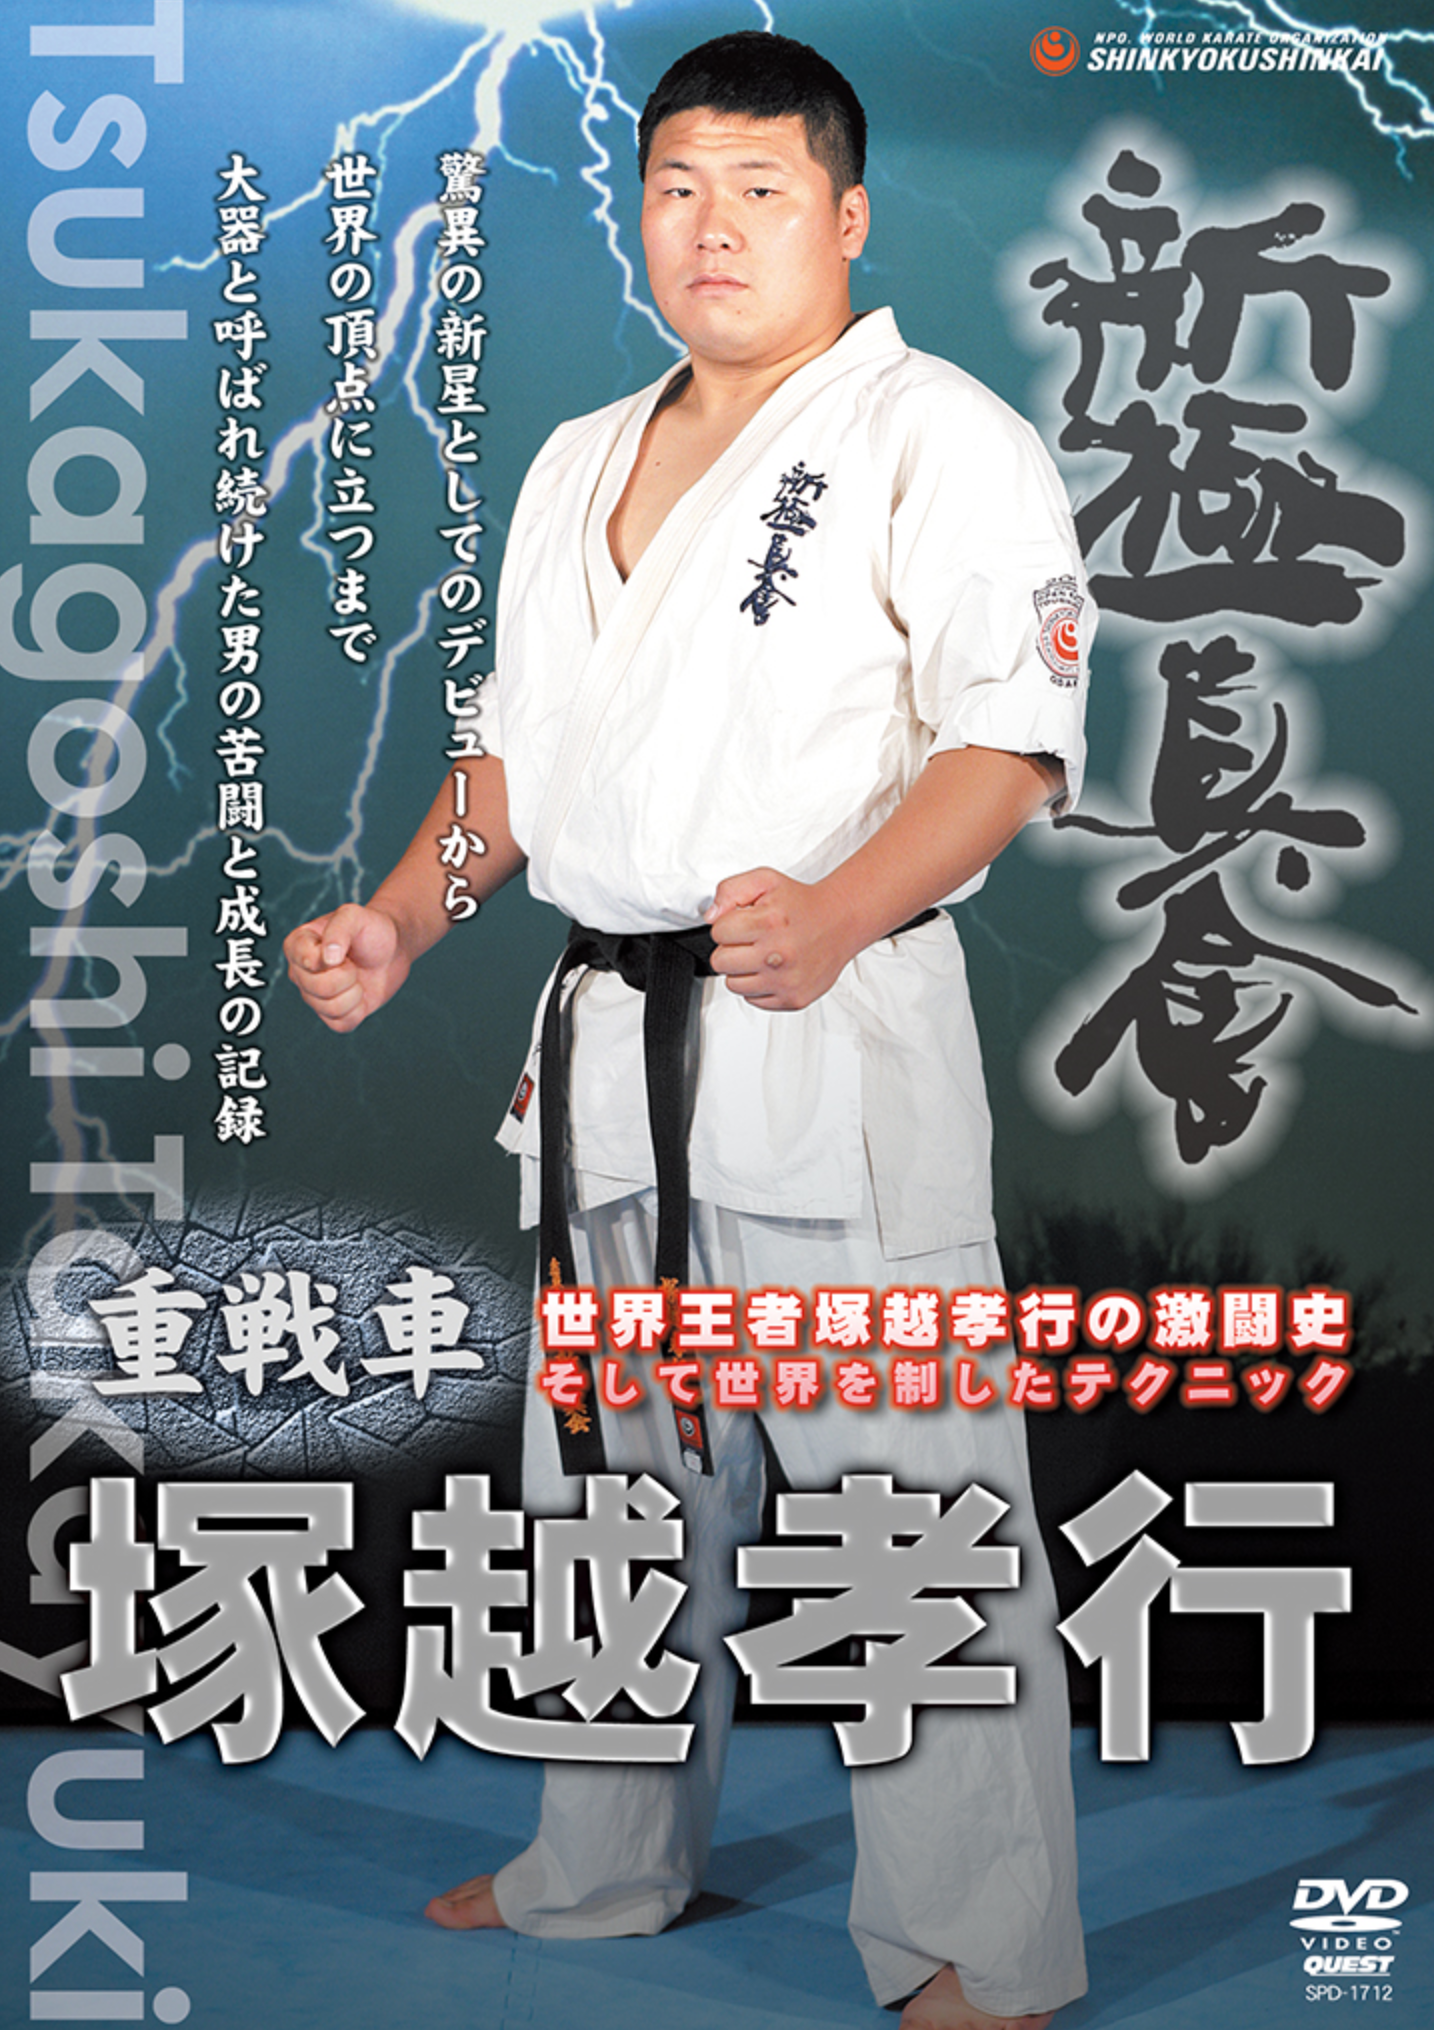 Shin Kyokushinkai DVD with Takayuki Tsukagoshi - Budovideos Inc